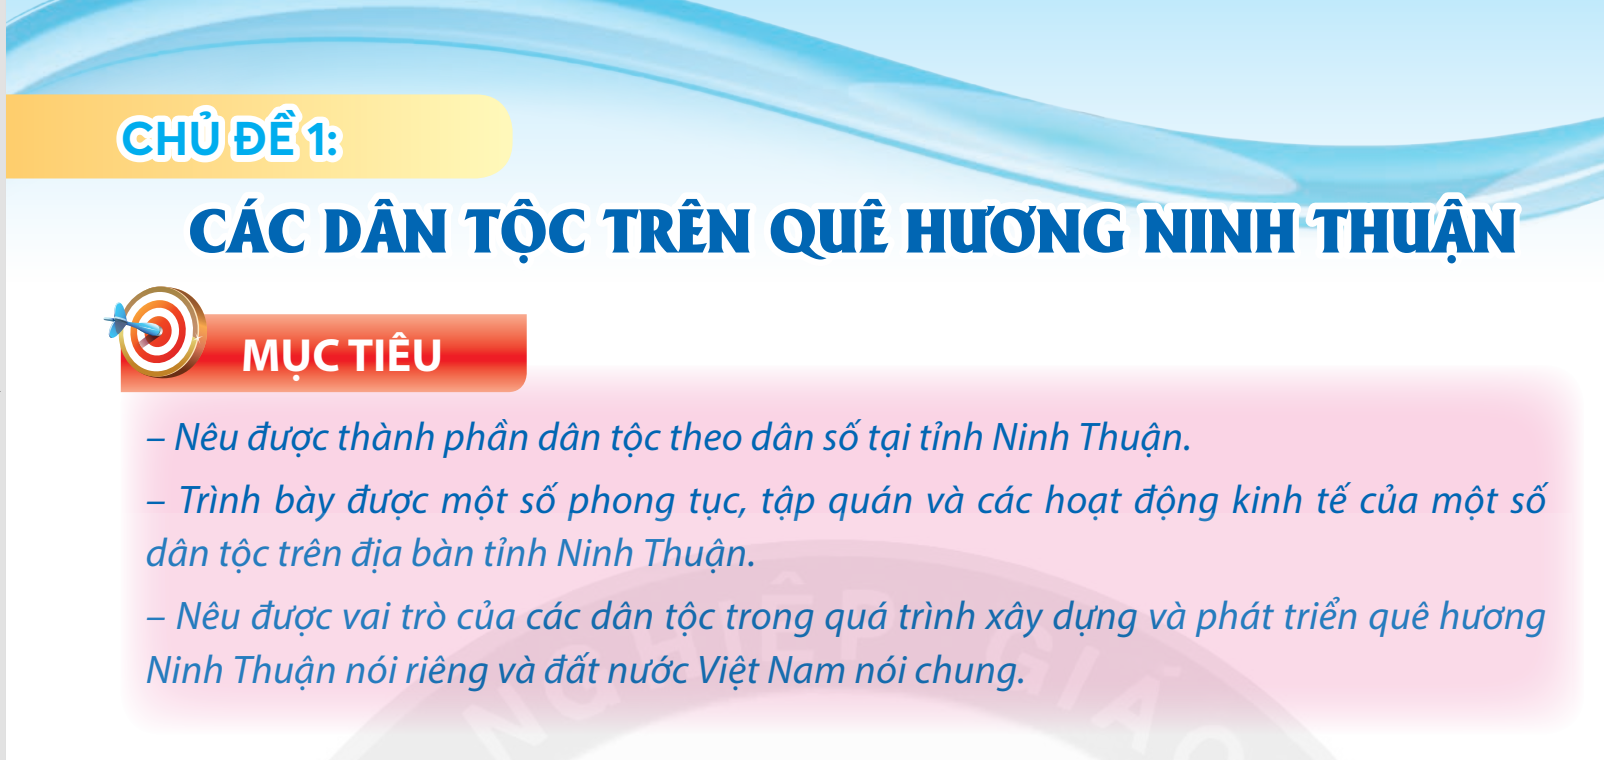 Chủ đề 1: Các dân tộc thiểu số ở tỉnh Ninh Thuận